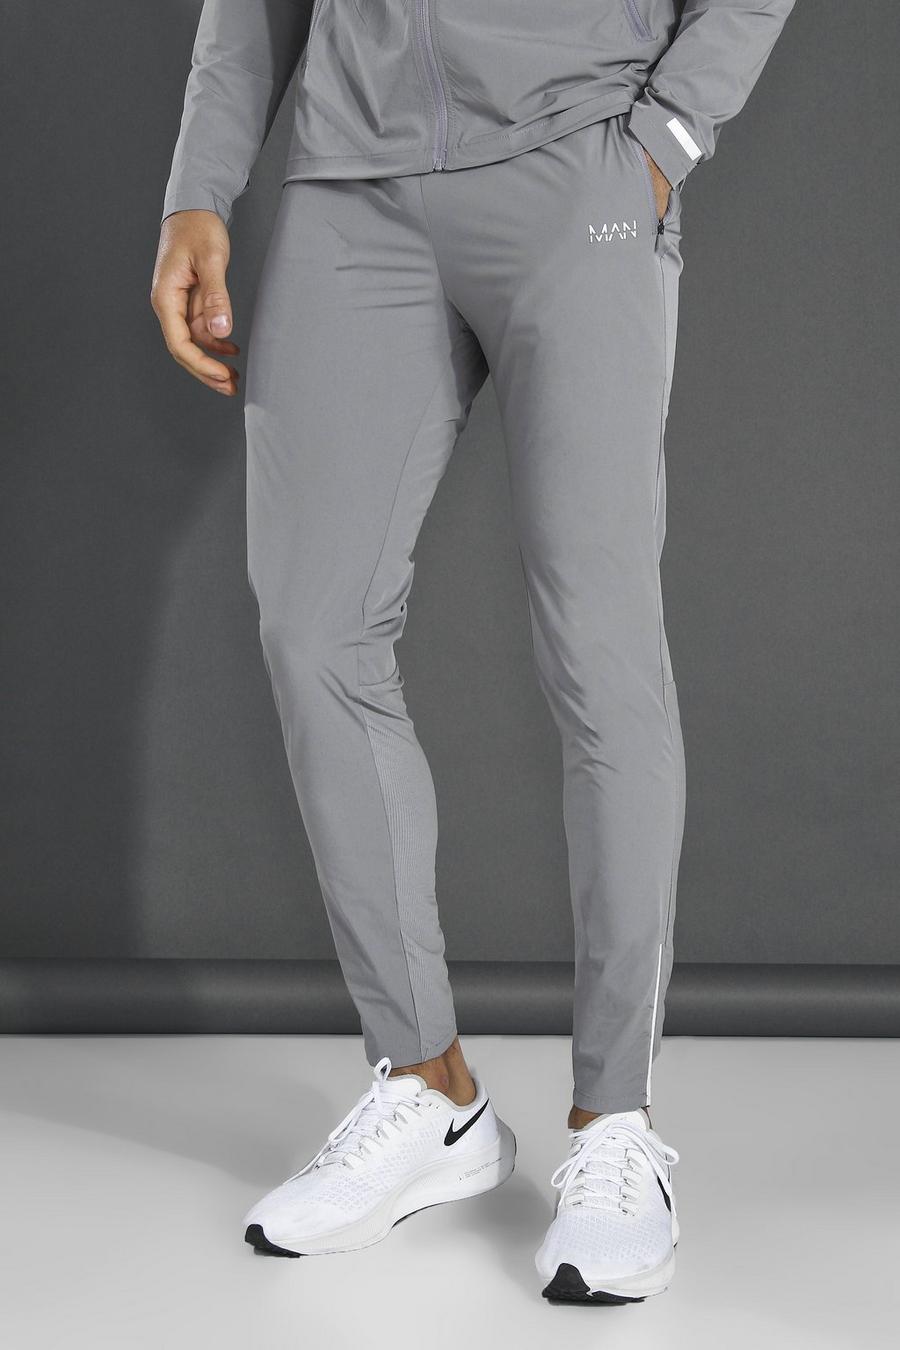 אפור מכנסי טרנינג ספורטיביים קלילים חלקים עם כיתוב Man